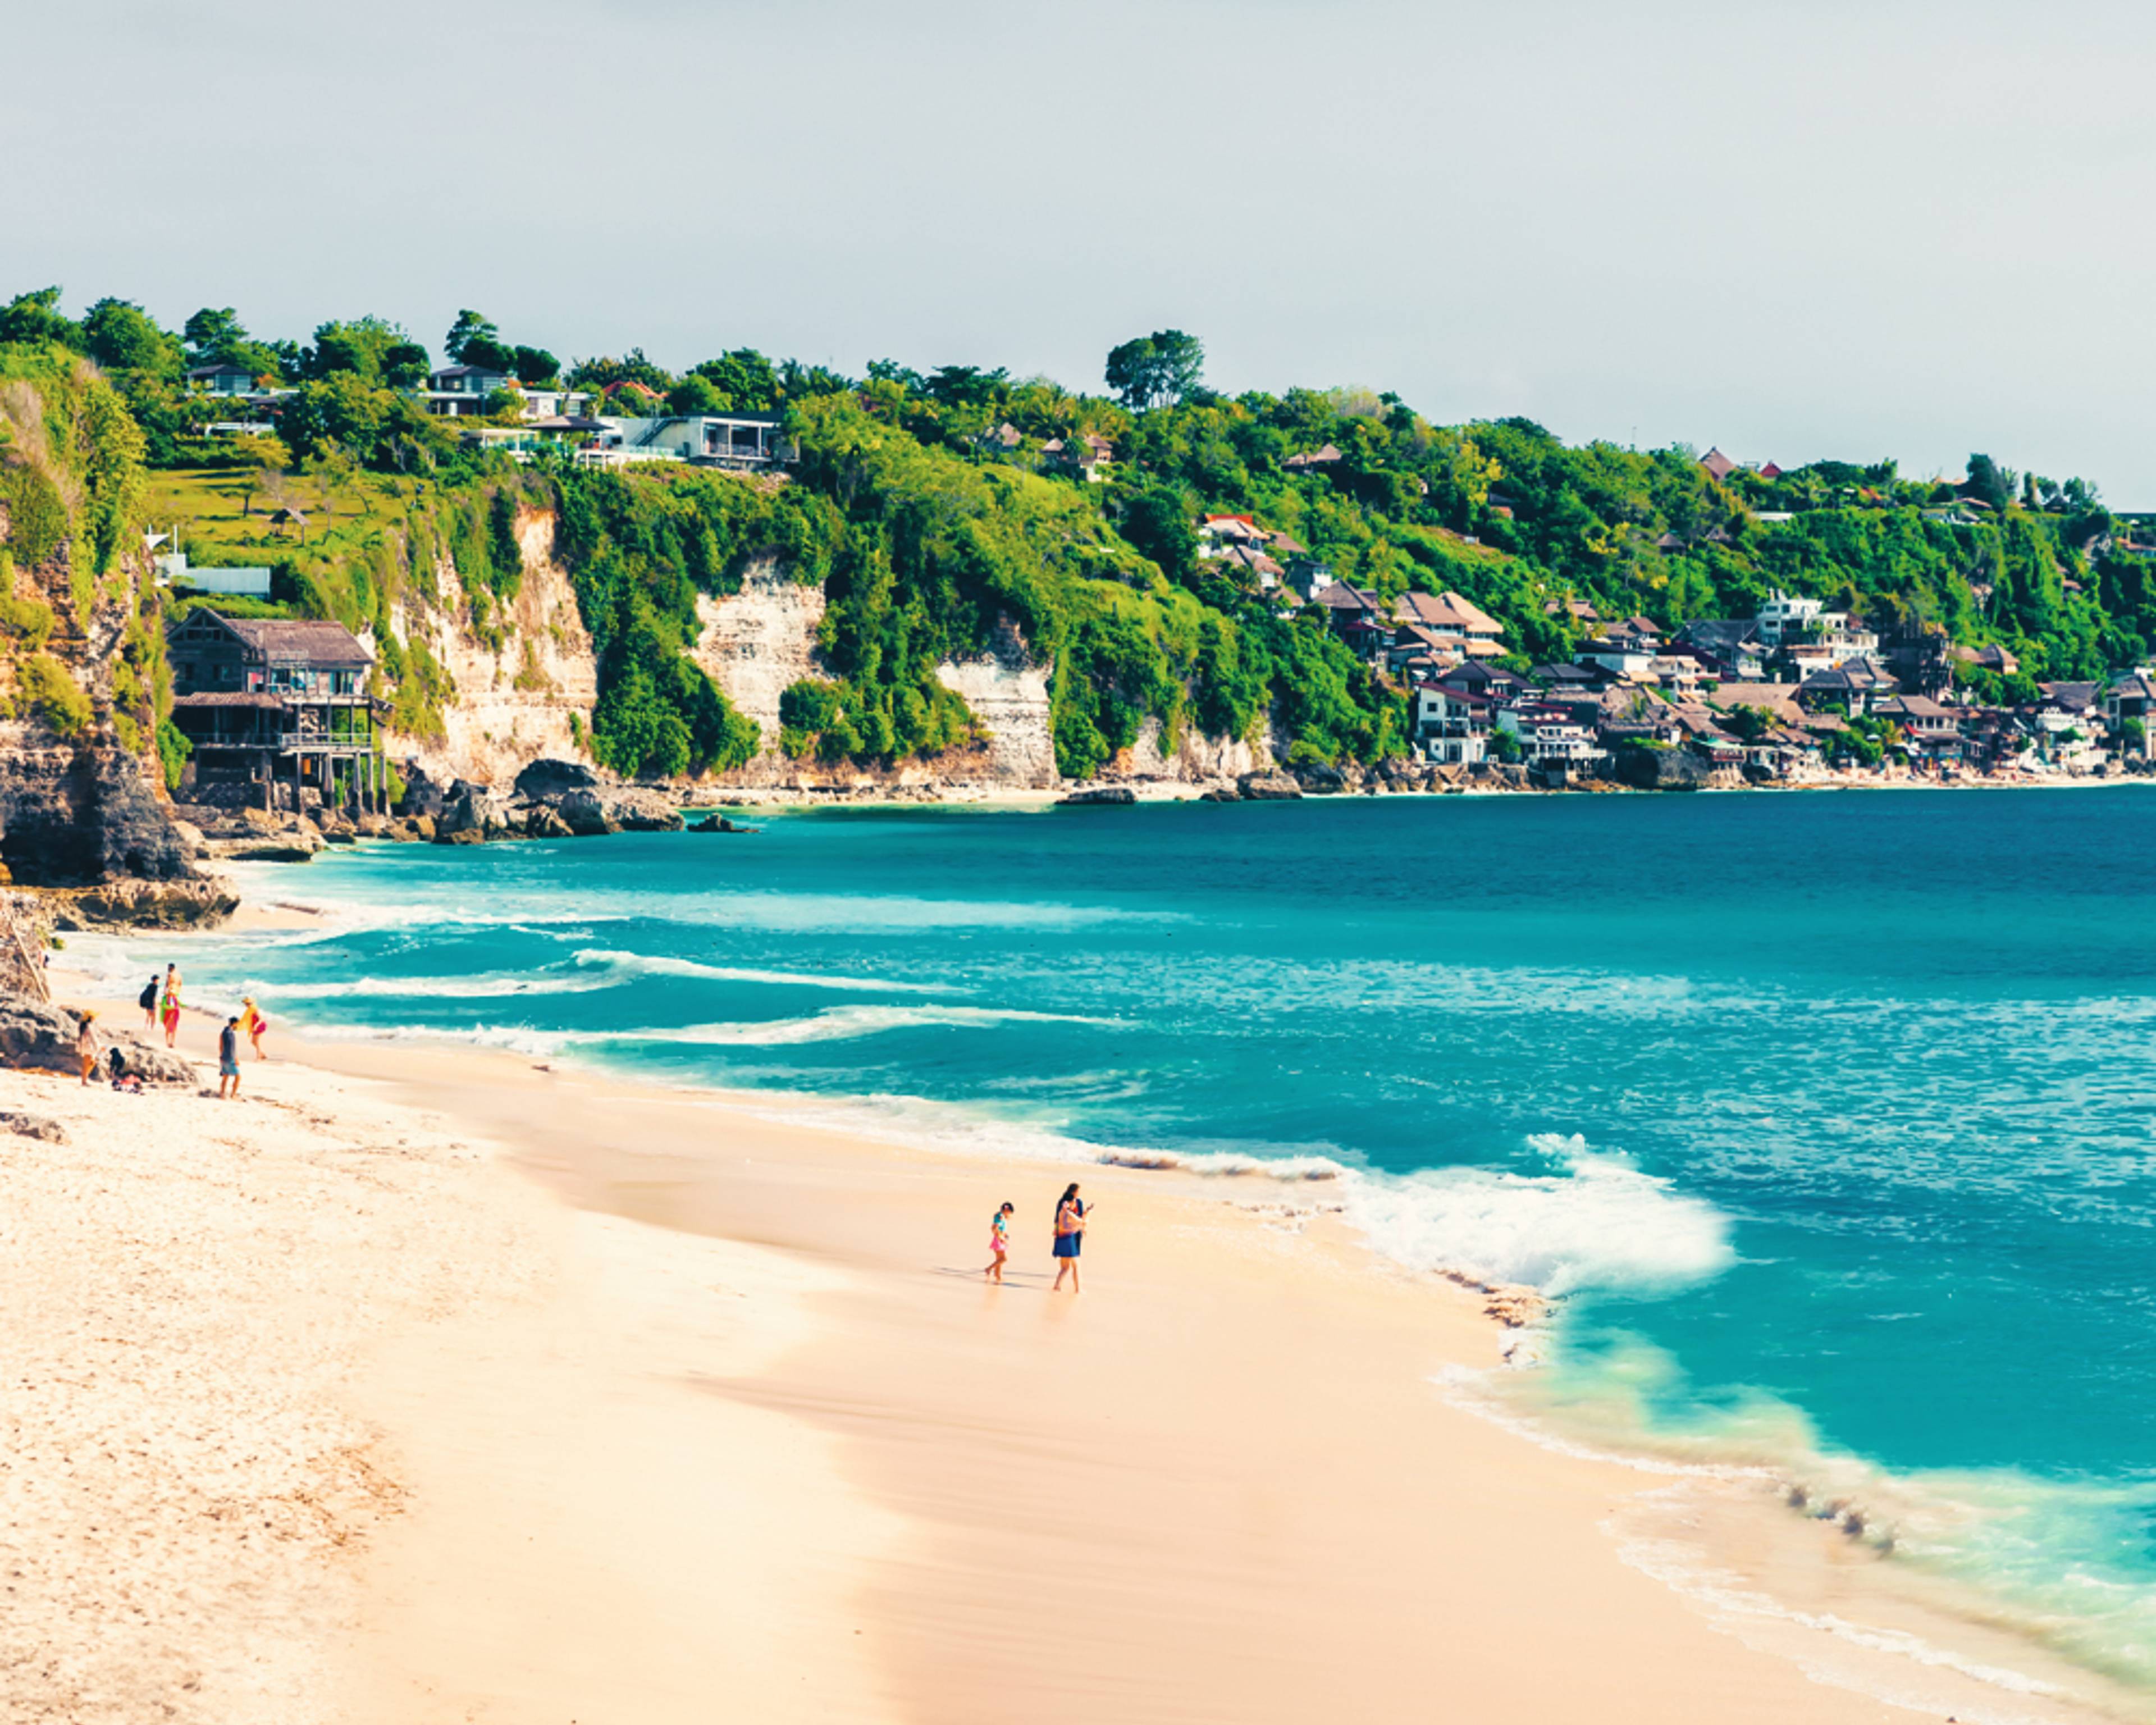 Crea il tuo viaggio a Bali in estate, 100% su misura